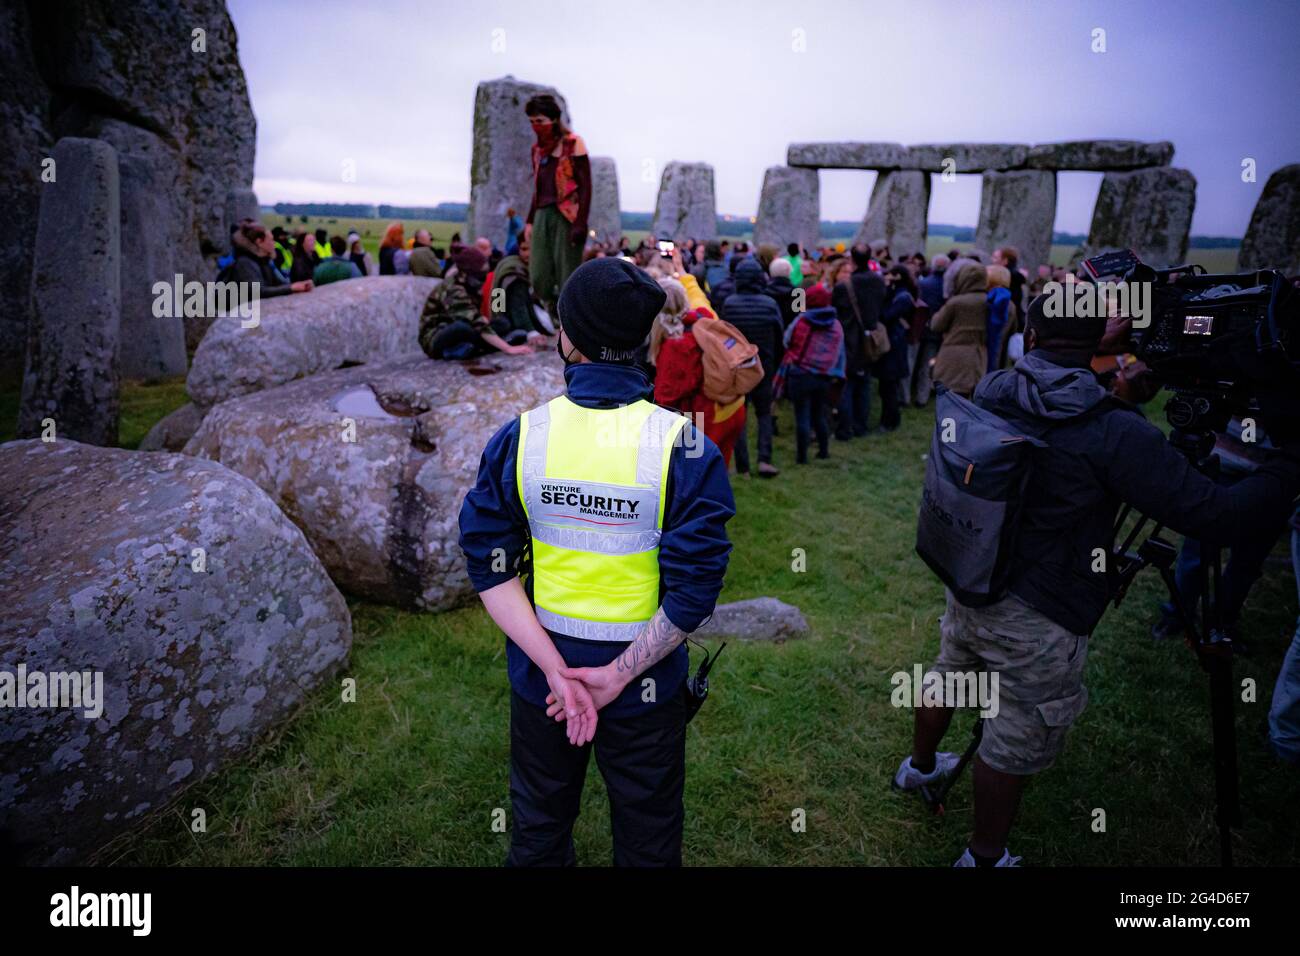 Die Wachleute feiern während der Sommersonnenwende in Stonehenge, wo einige Menschen über den Zaun sprangen, um den Steinkreis zu betreten und den Sonnenaufgang am längsten Tag in Großbritannien zu beobachten. Die Steine wurden für die Feierlichkeiten, bei denen große Menschenmengen im Kreis zu sehen sind, aufgrund der Coronavirus-Lockdown-Erweiterung offiziell geschlossen. Bilddatum: Montag, 21. Juni 2021. Stockfoto